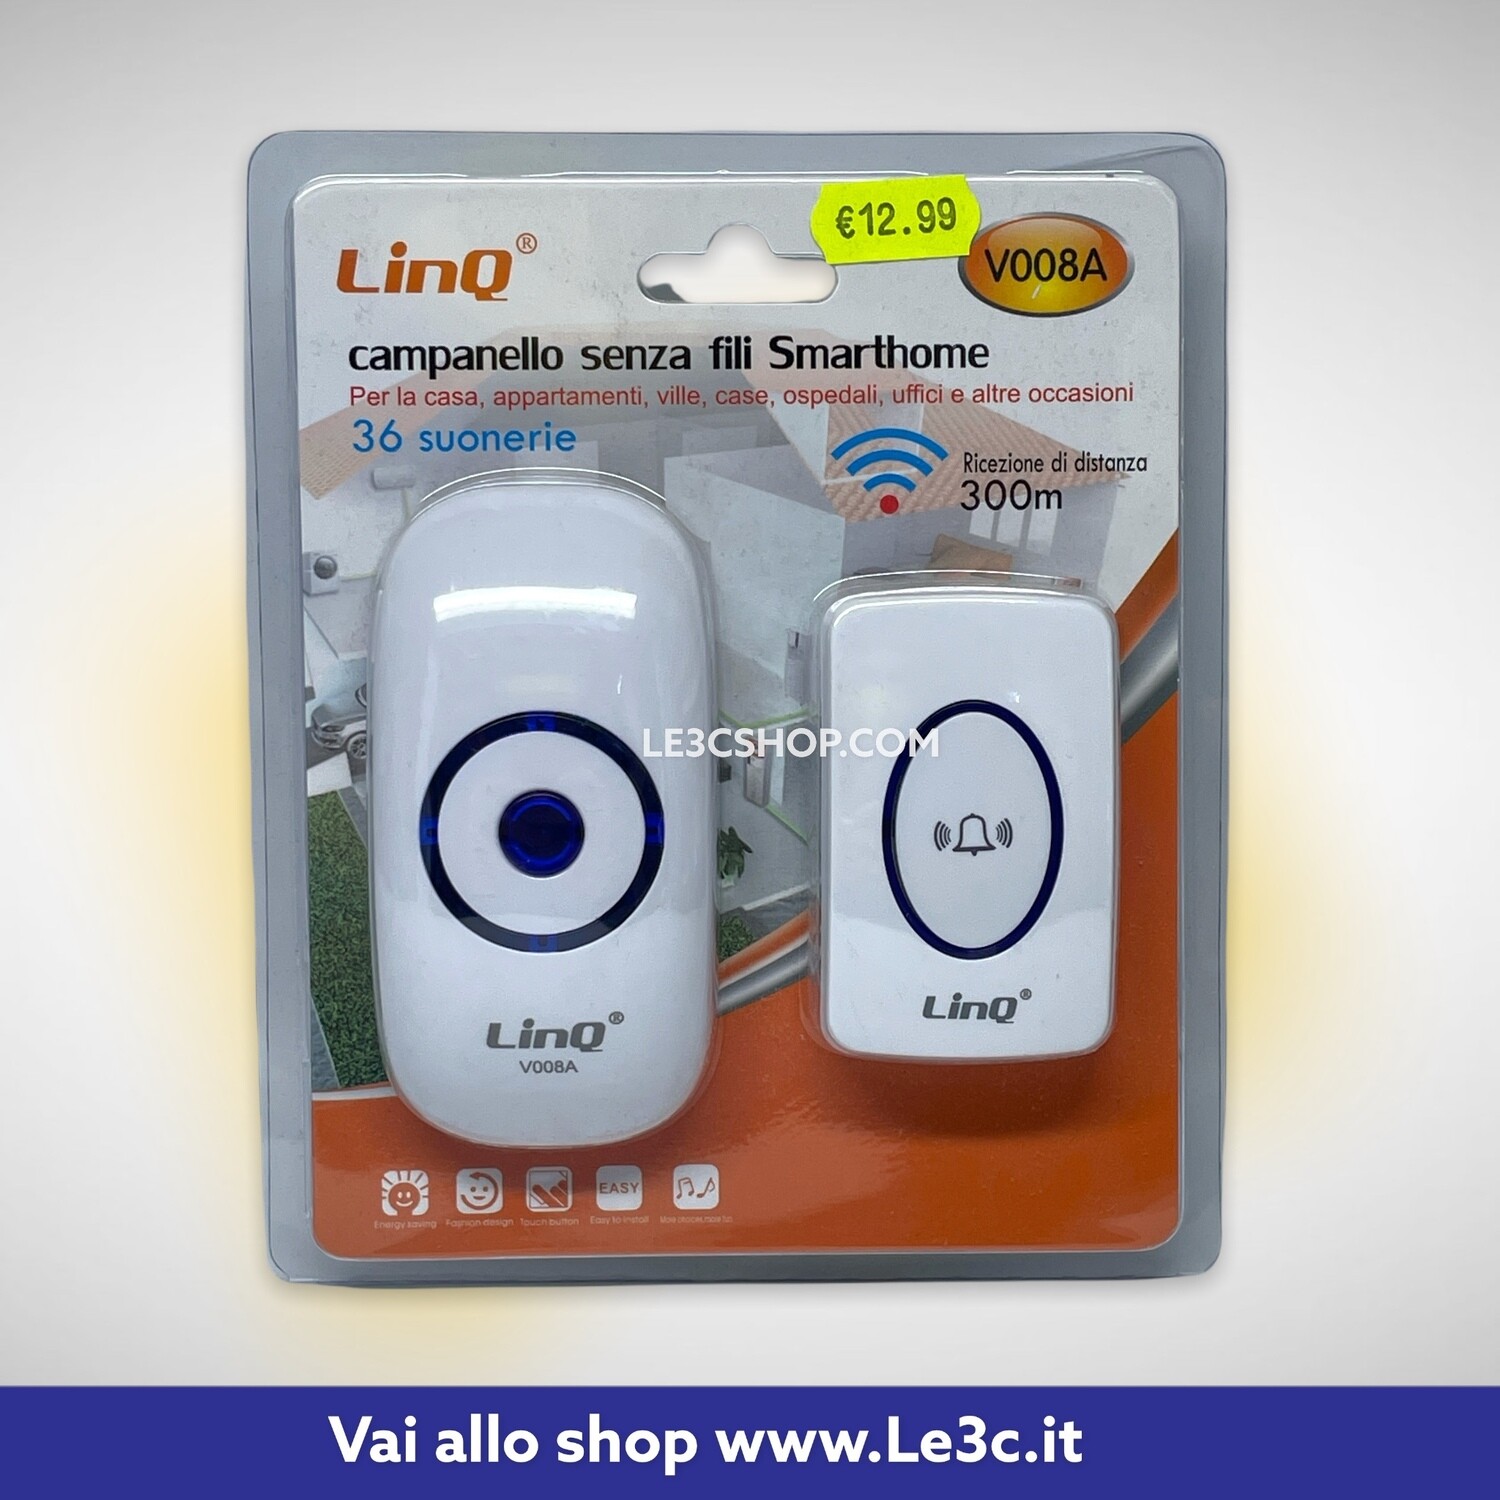 Campanello senza fili smarthome linq V008A